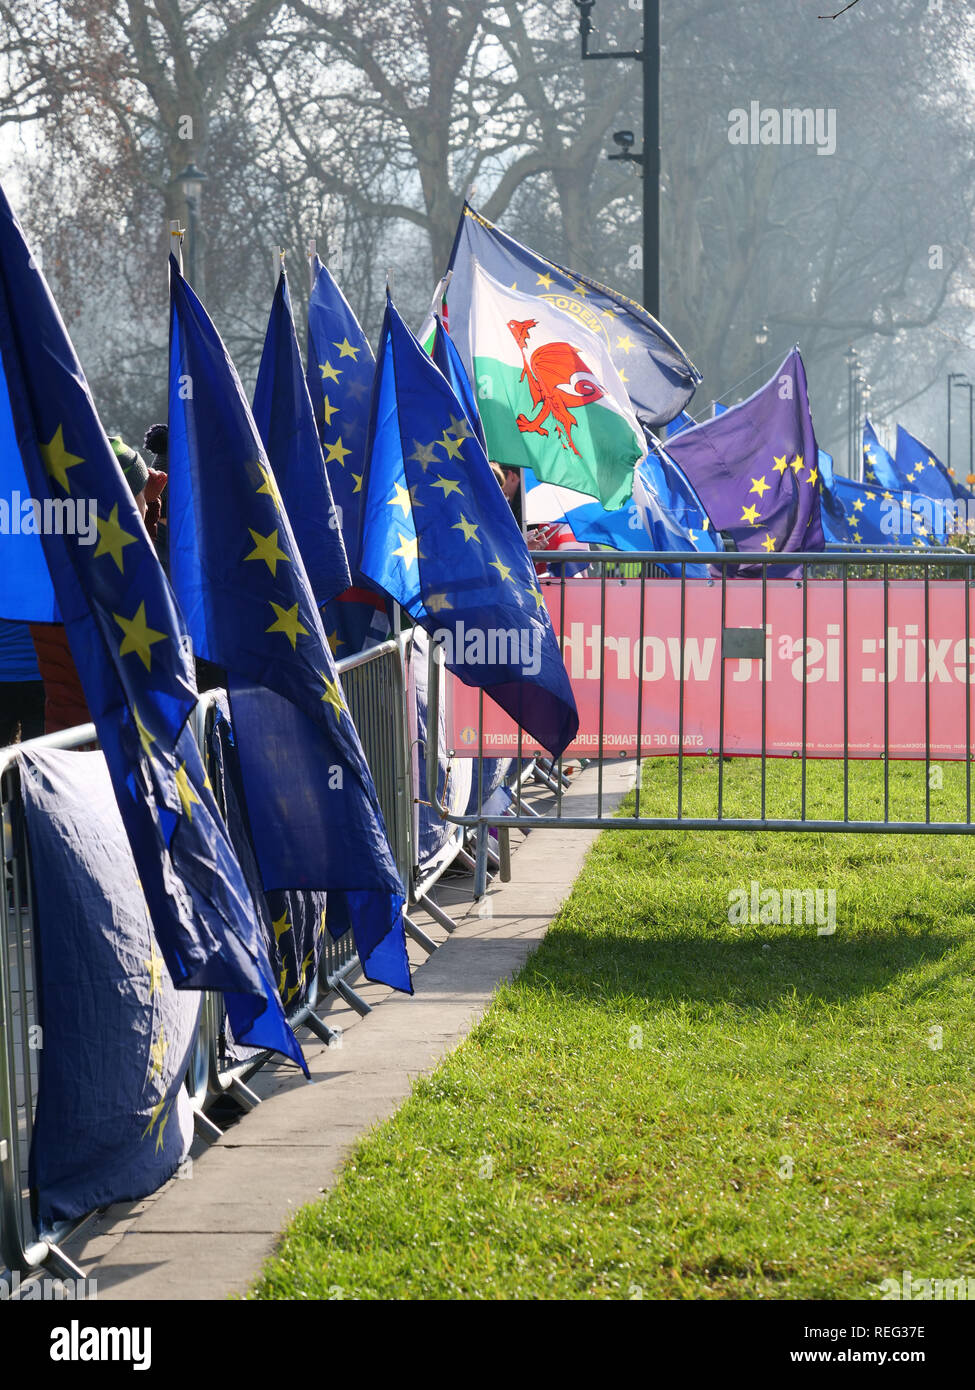 Londres, Reino Unido. 21 Enero, 2019. Las banderas de la Unión Europea en apoyo de permanecer dentro de la UE alrededor de las Casas del Parlamento hoy. Crédito: Joe Kuis / Alamy Live News Foto de stock